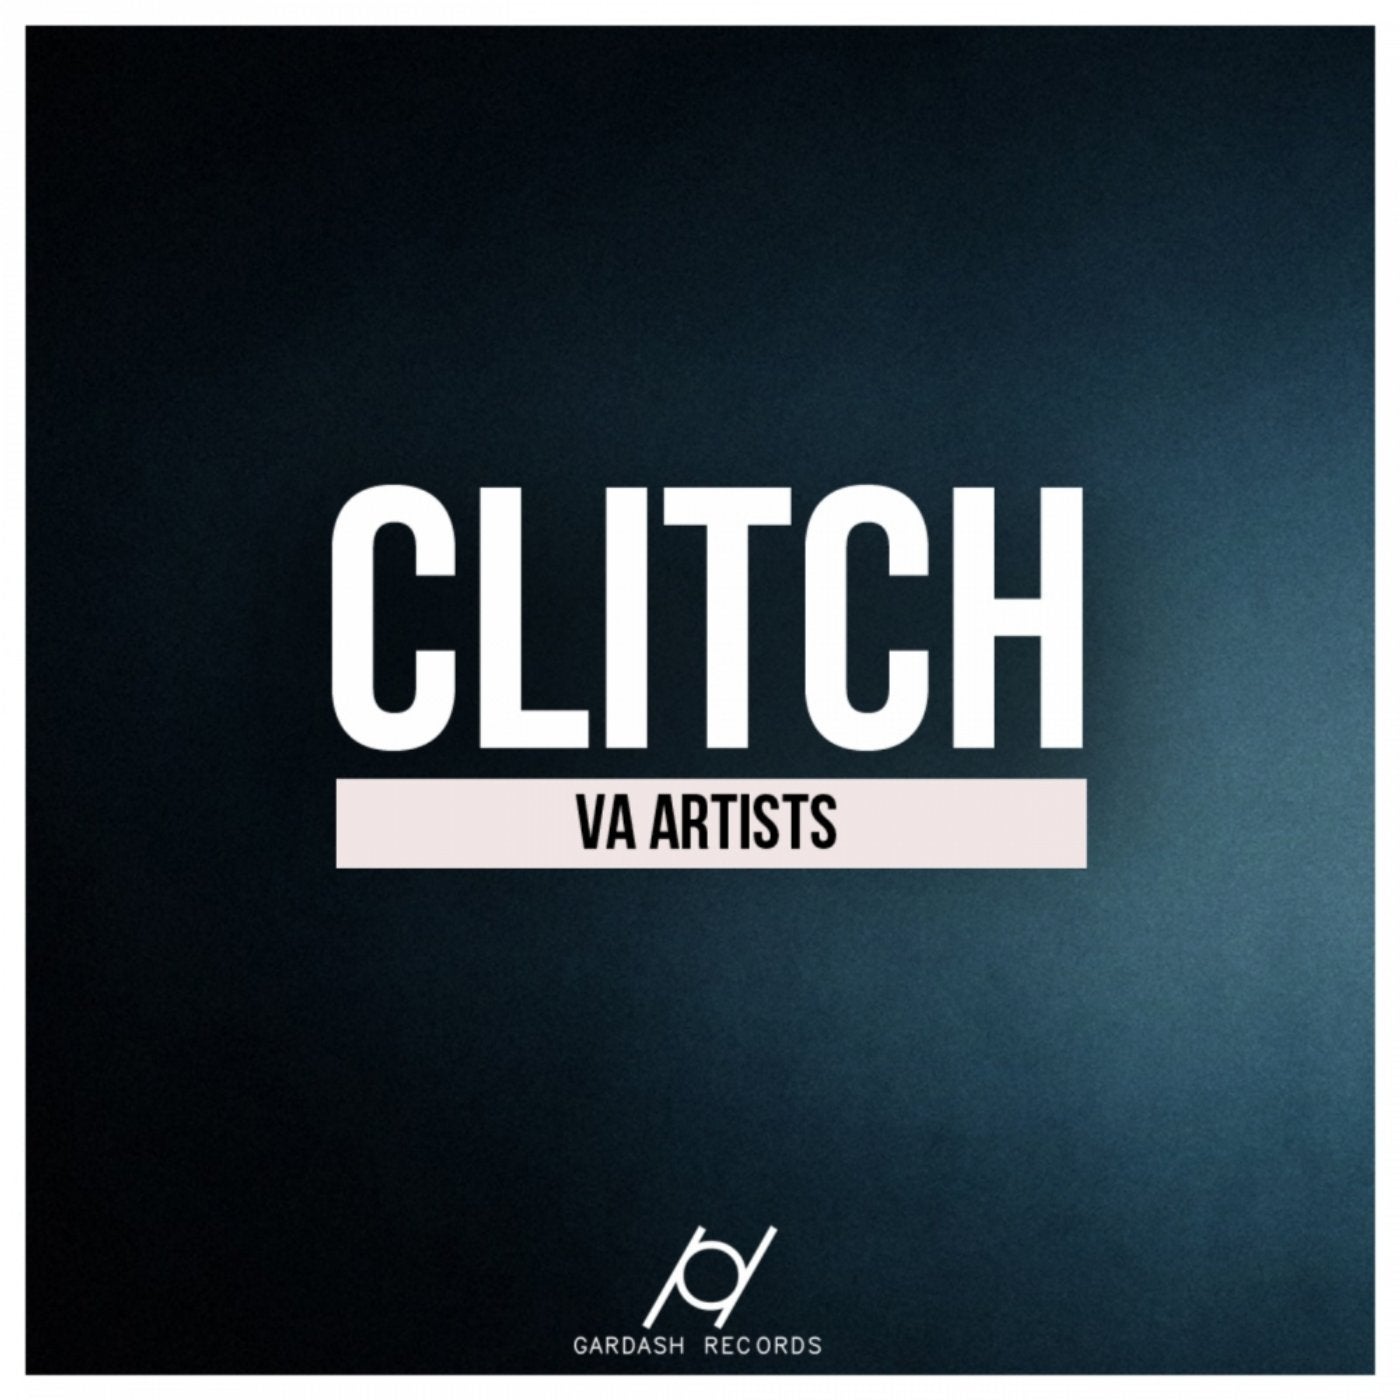 Clitch